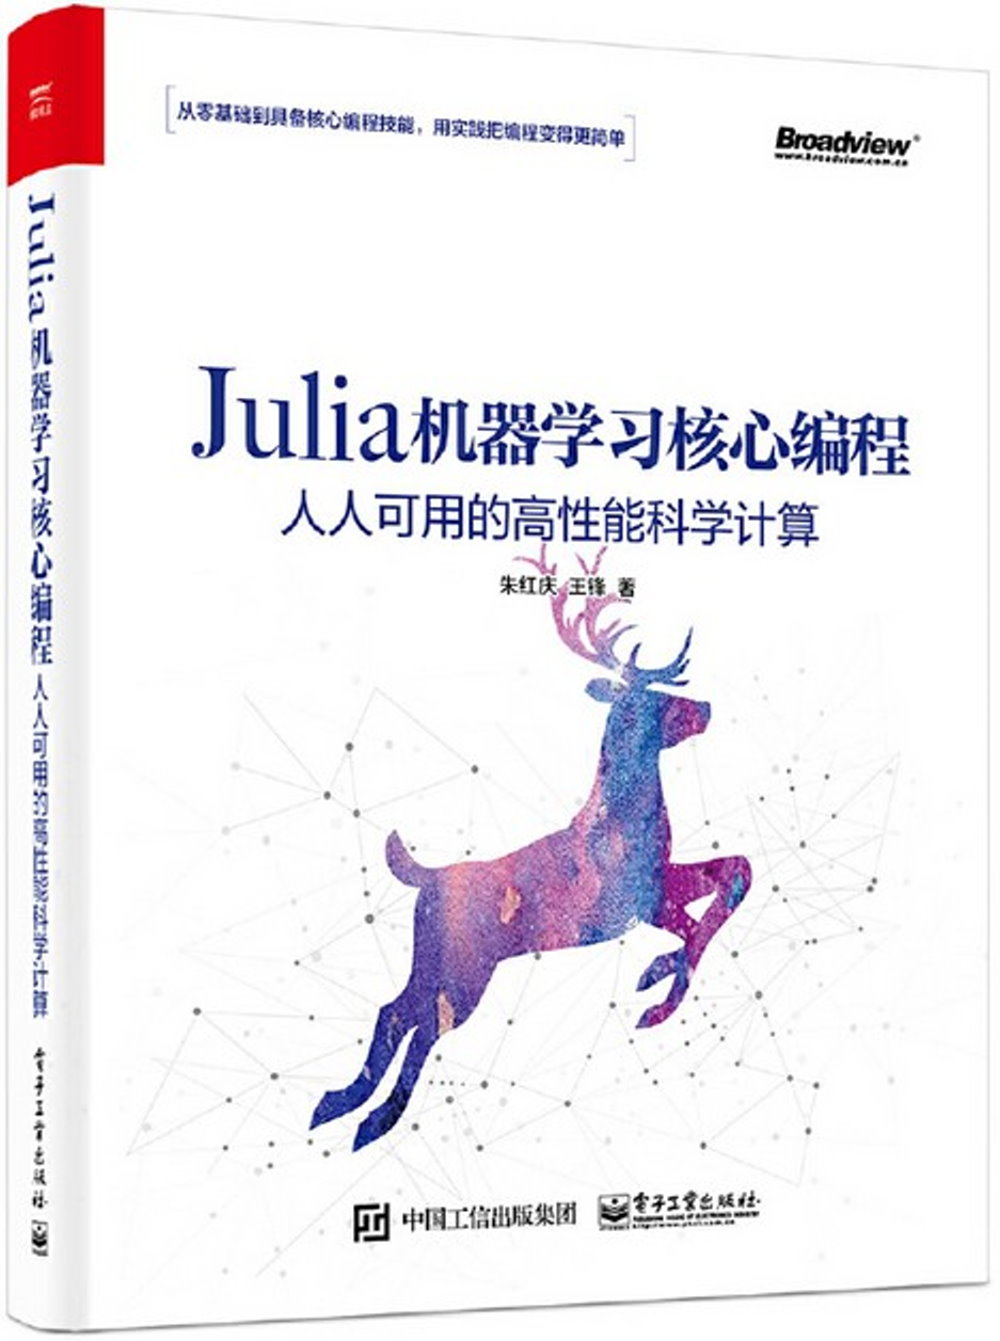 Julia機器學習核心程式設計：人人可用的高性能科學計算